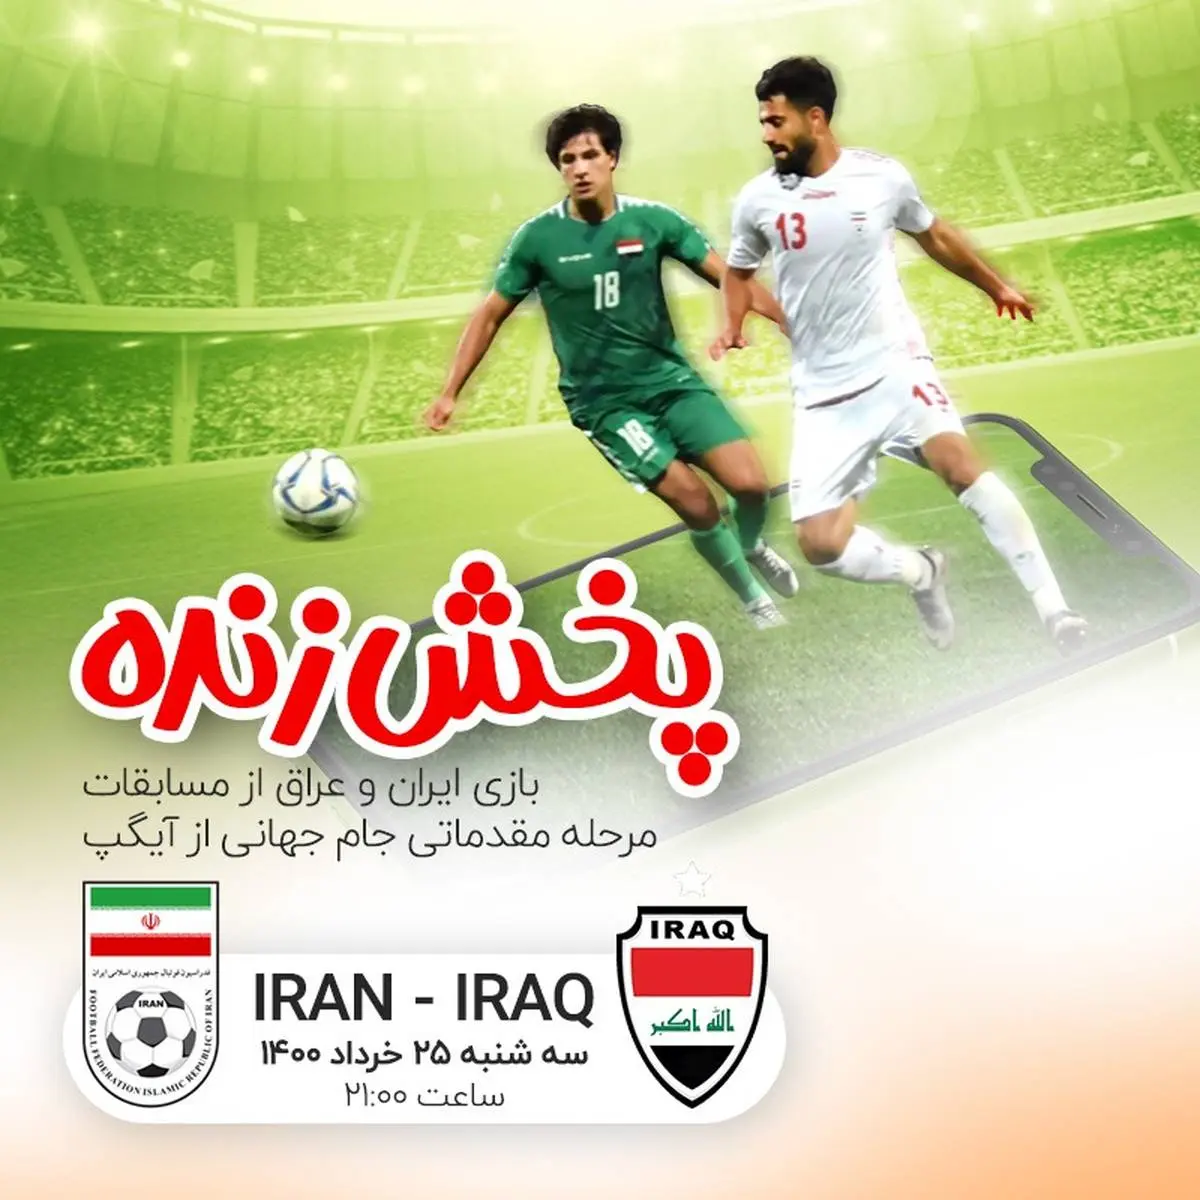 پخش زنده دیدار ایران - عراق از آیگپ

